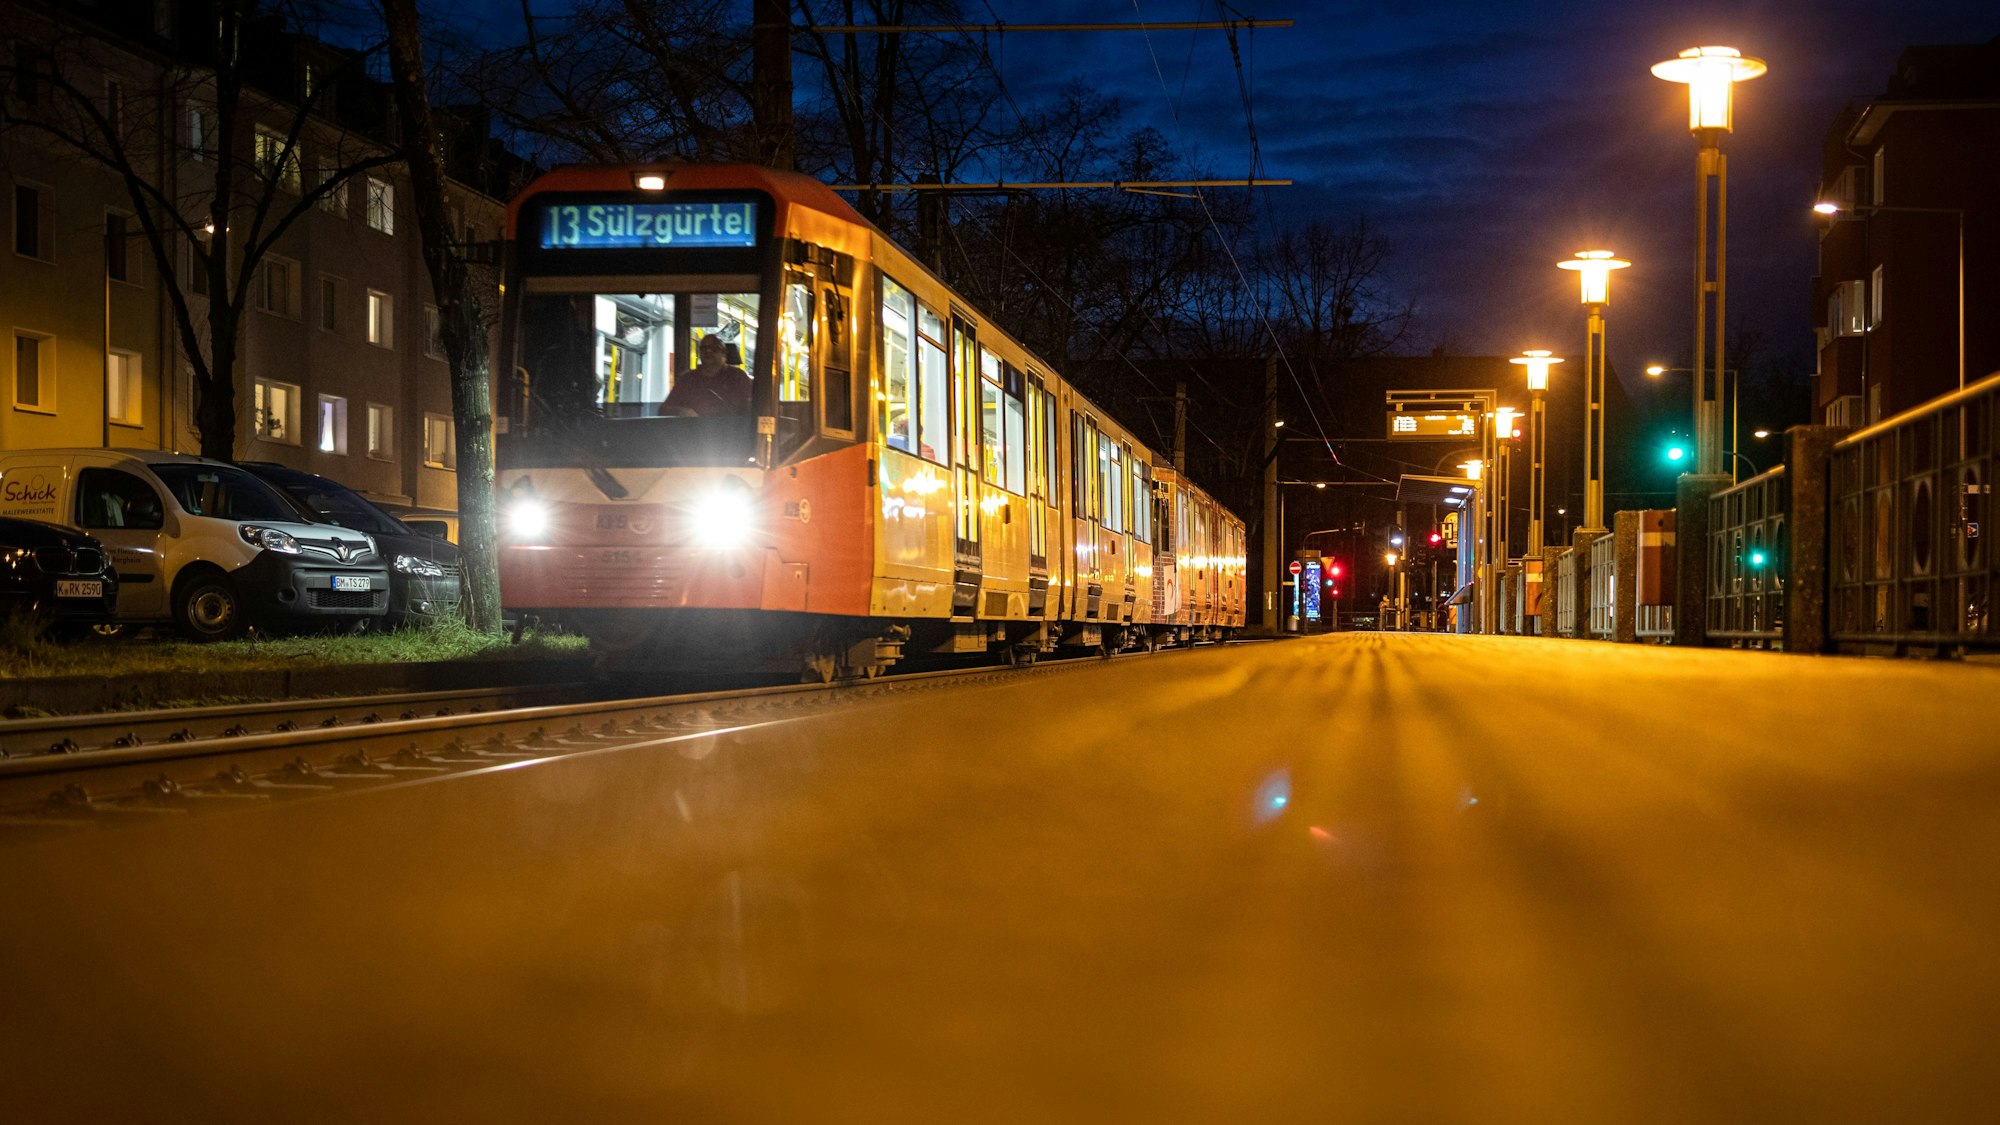 Am Wiener Platz in Mülheim hat sich am Donnerstagmorgen ein Unfall mit einer KVB-Bahn ereignet. Unser Symbolfoto vom 2. Februar 2021 zeigt eine KVB-Bahn der Linie 13.